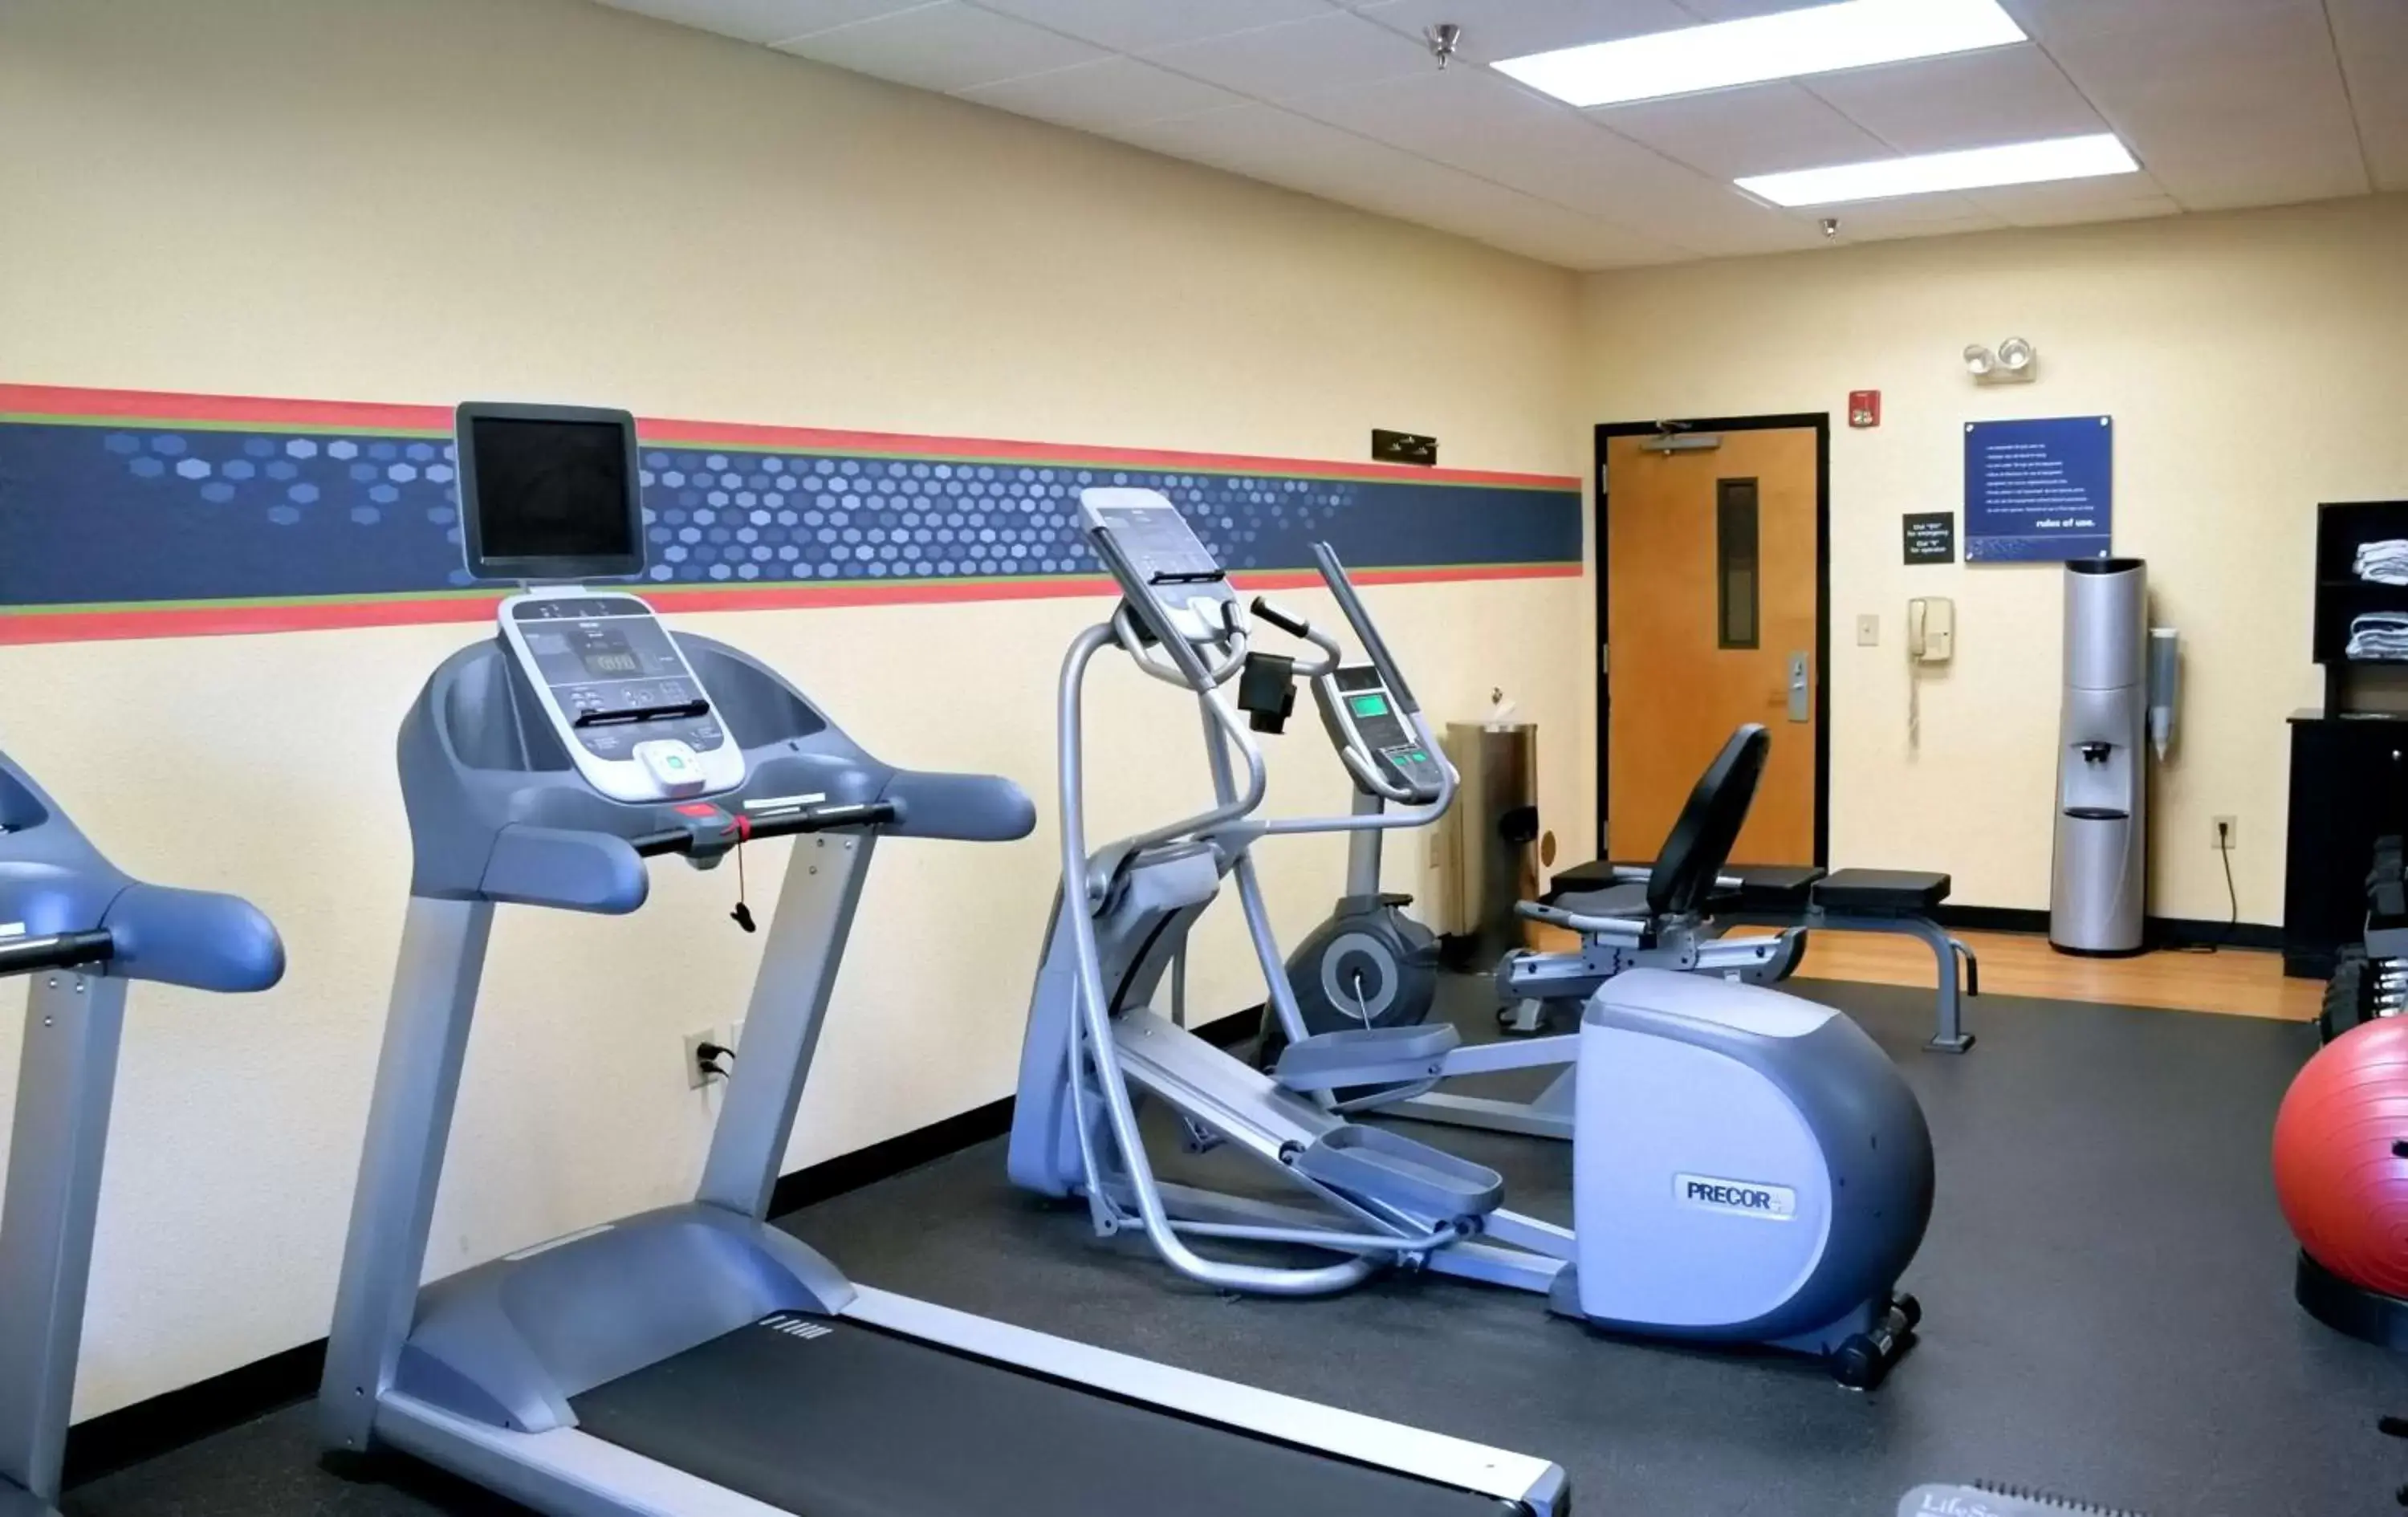 Fitness centre/facilities, Fitness Center/Facilities in Hampton Inn & Suites Birmingham-Pelham - I-65